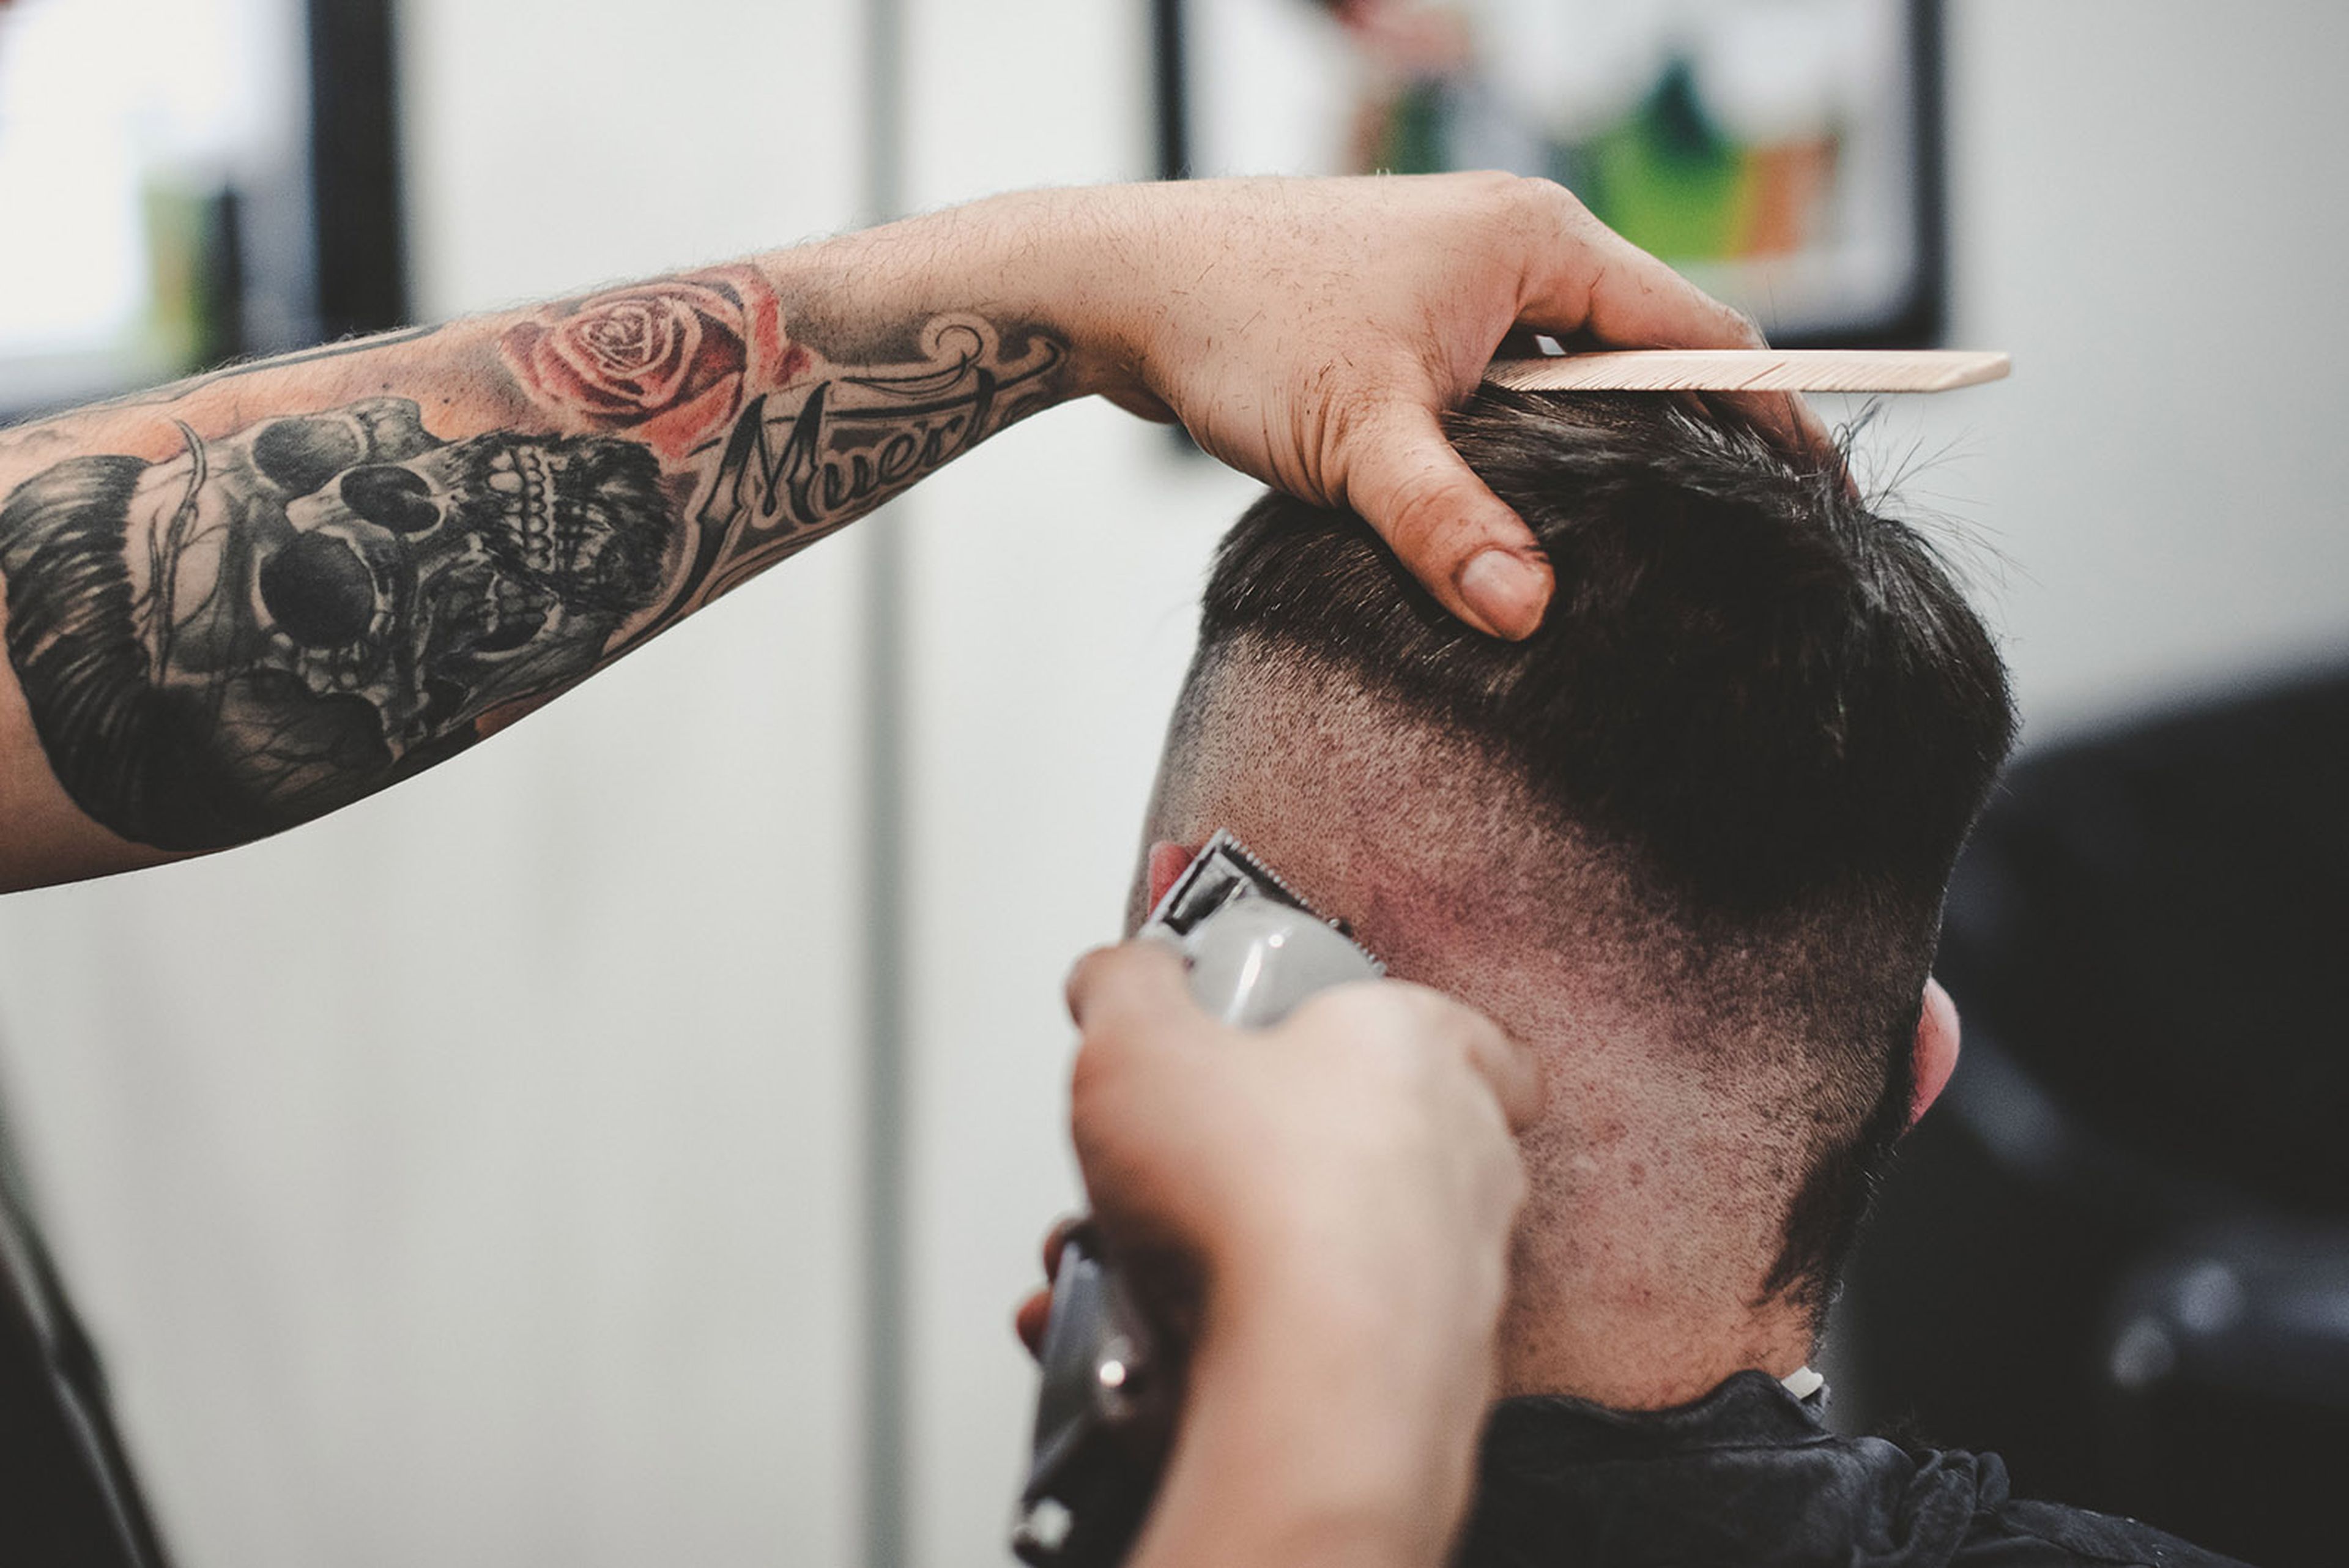 Barbero cortando el pelo con un cortapelos